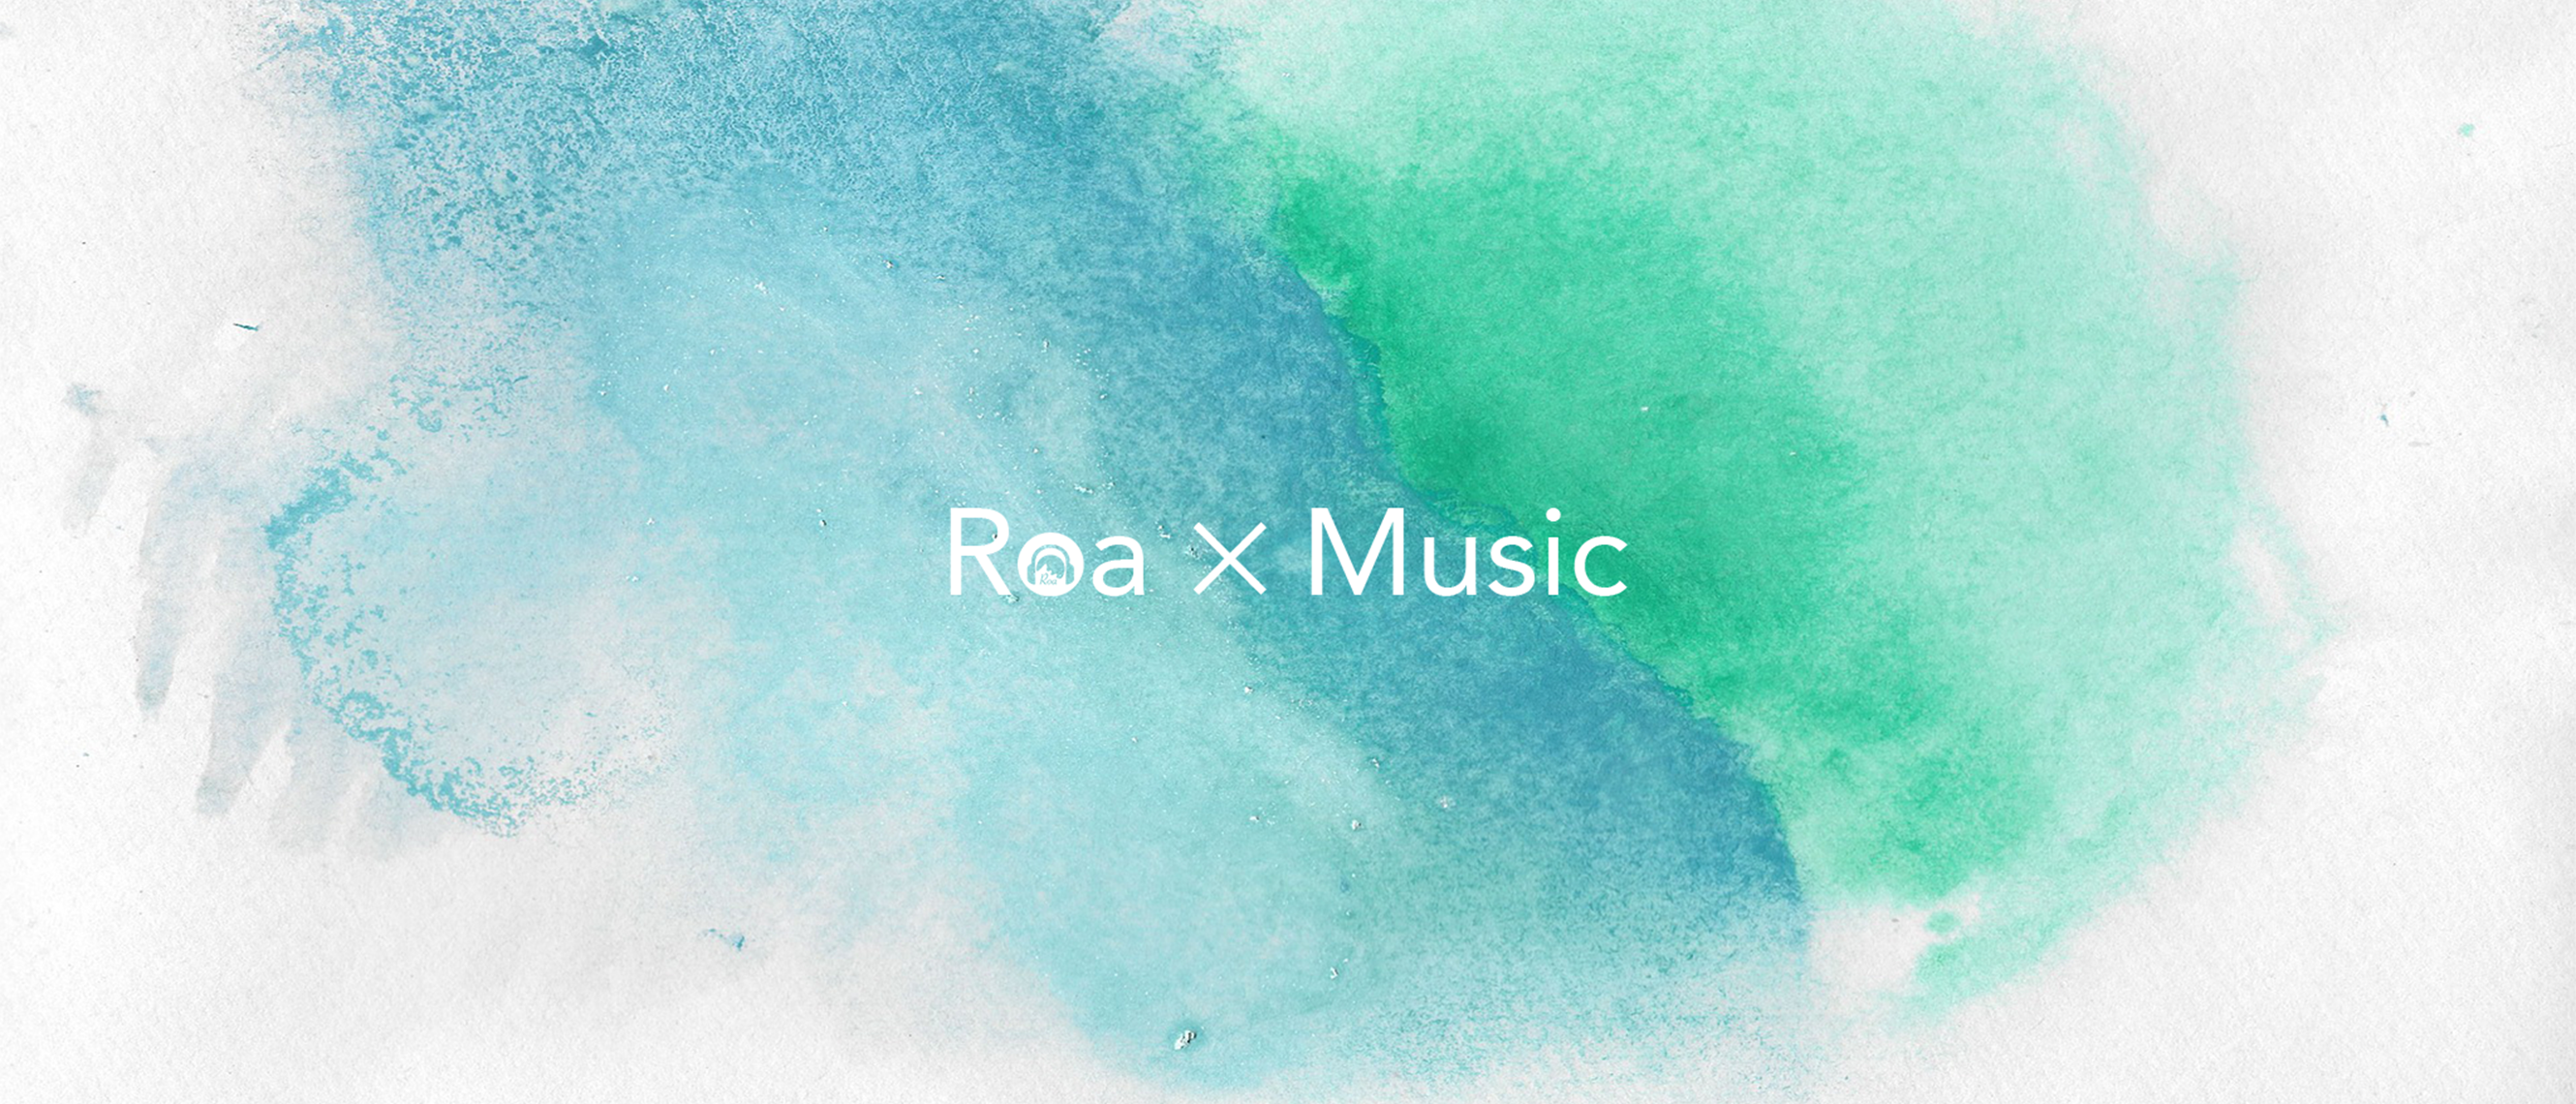 Roa Music 楽曲の無料ダウンロード方法と使用上のルール説明 Roa Blog